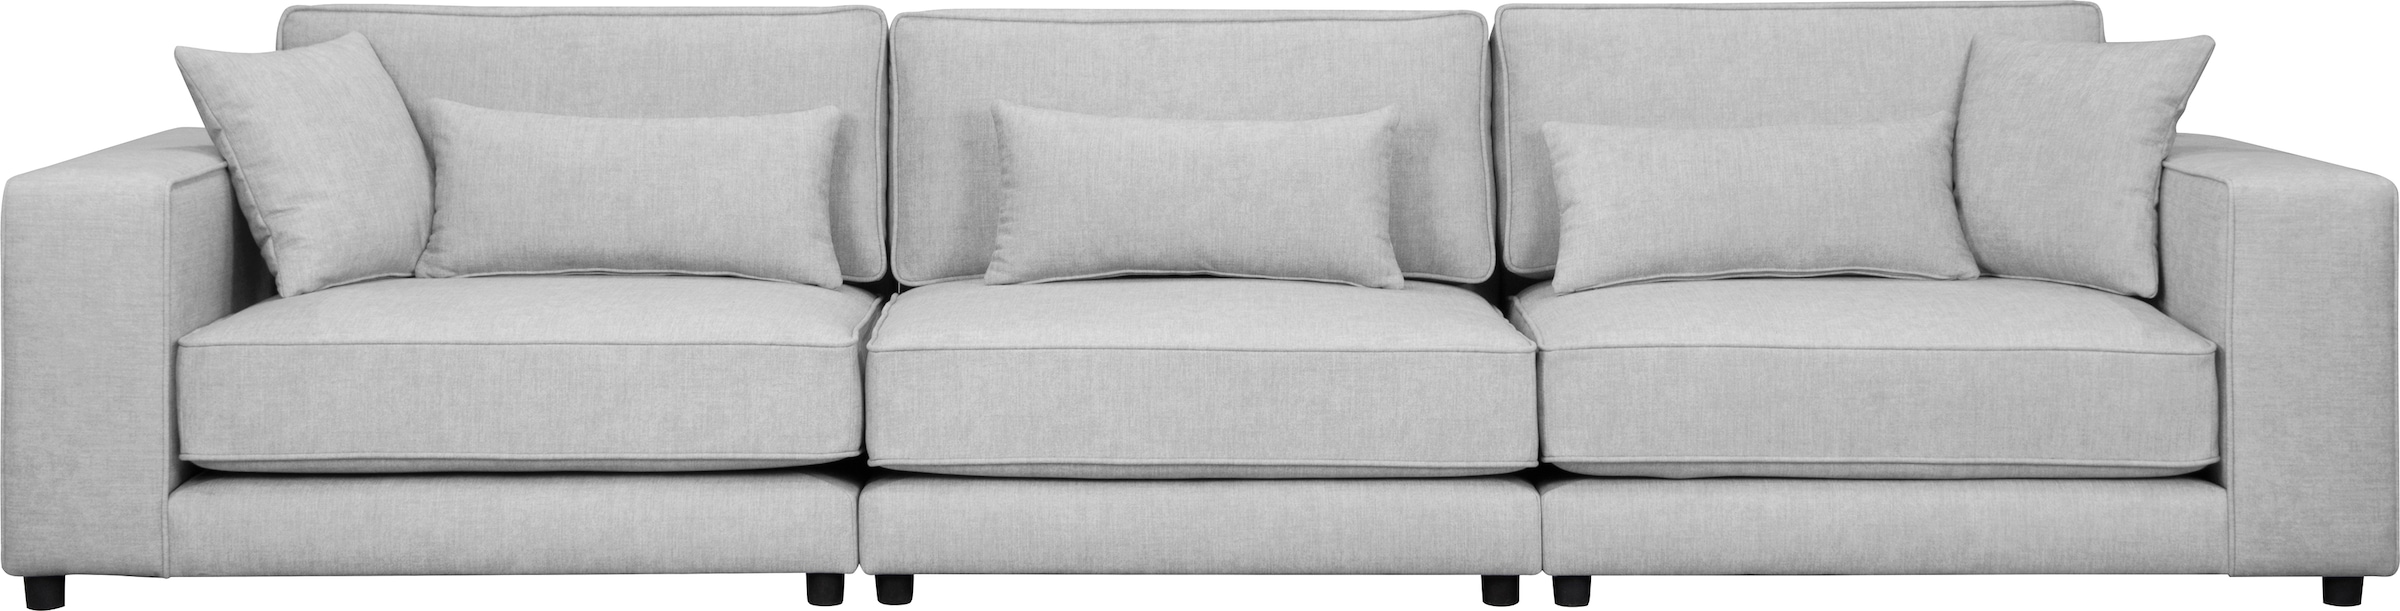 Big-Sofa »Grenette«, Modulsofa, im Baumwoll-/Leinenmix oder aus recycelten Stoffen